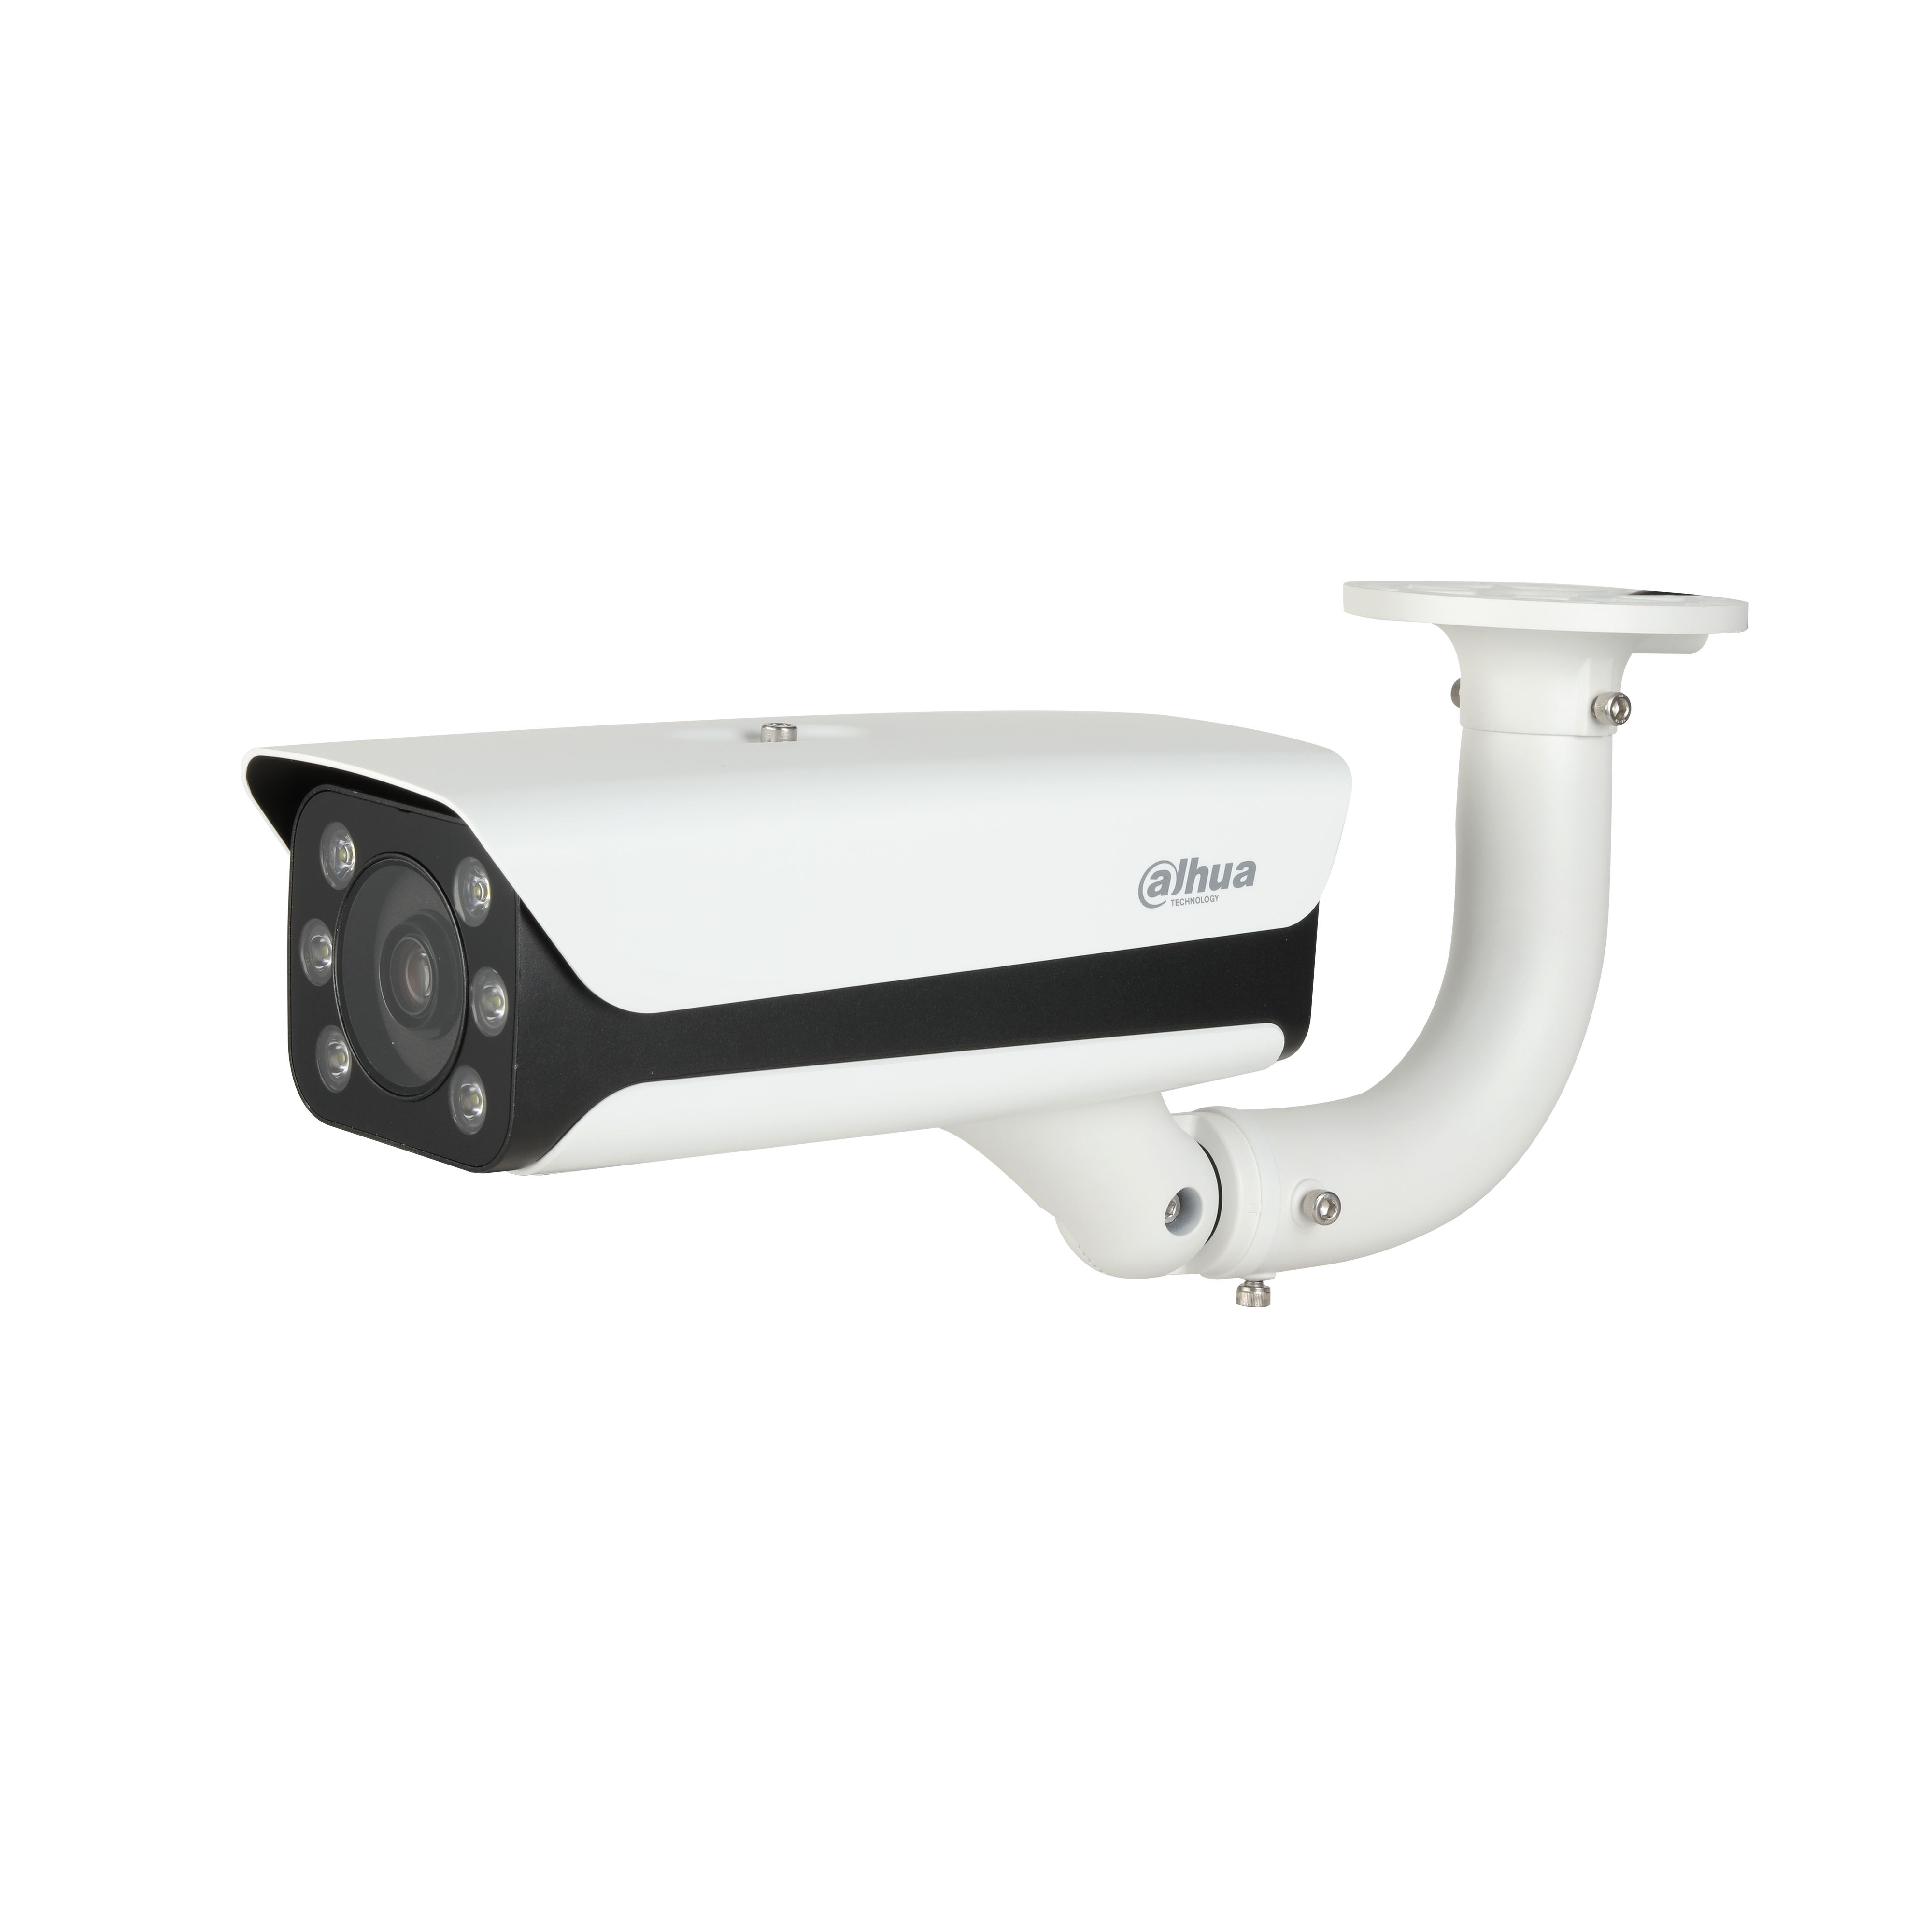 DAHUA IPC-HFW8242E-Z4FR-IRA-LED 2MP Starlight Bullet Network Camera